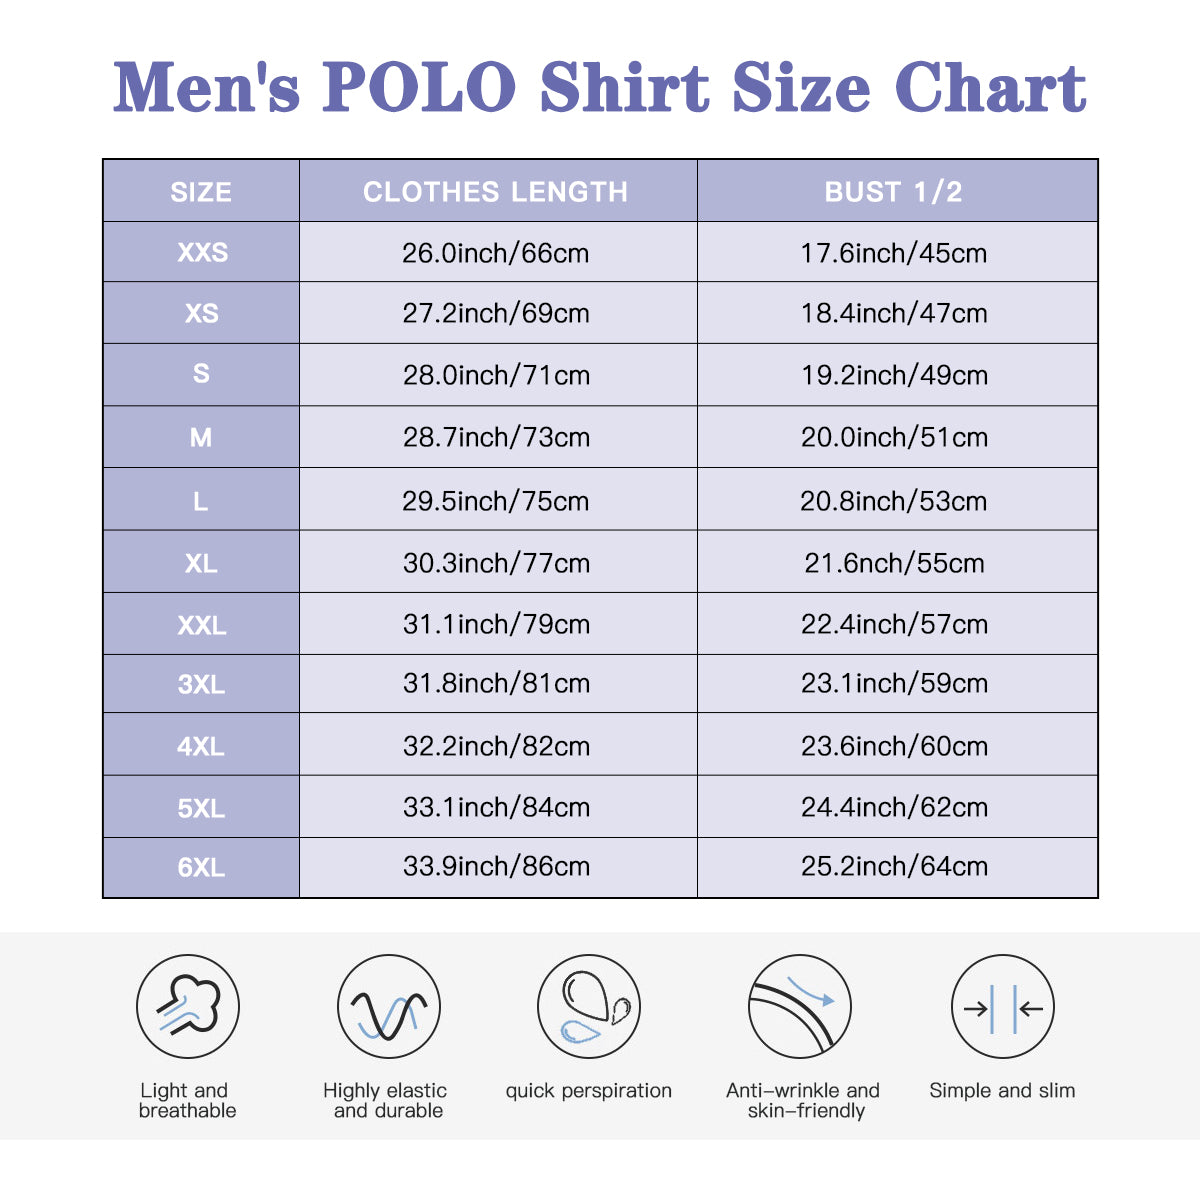 Retro Polo Shirt, Polo Shirt Men, Retro Shirt Men, 70s Shirt Men, 70s Style Shirt, 70s Style polo, Retro Style Shirt, Short Sleeve Shirt Men